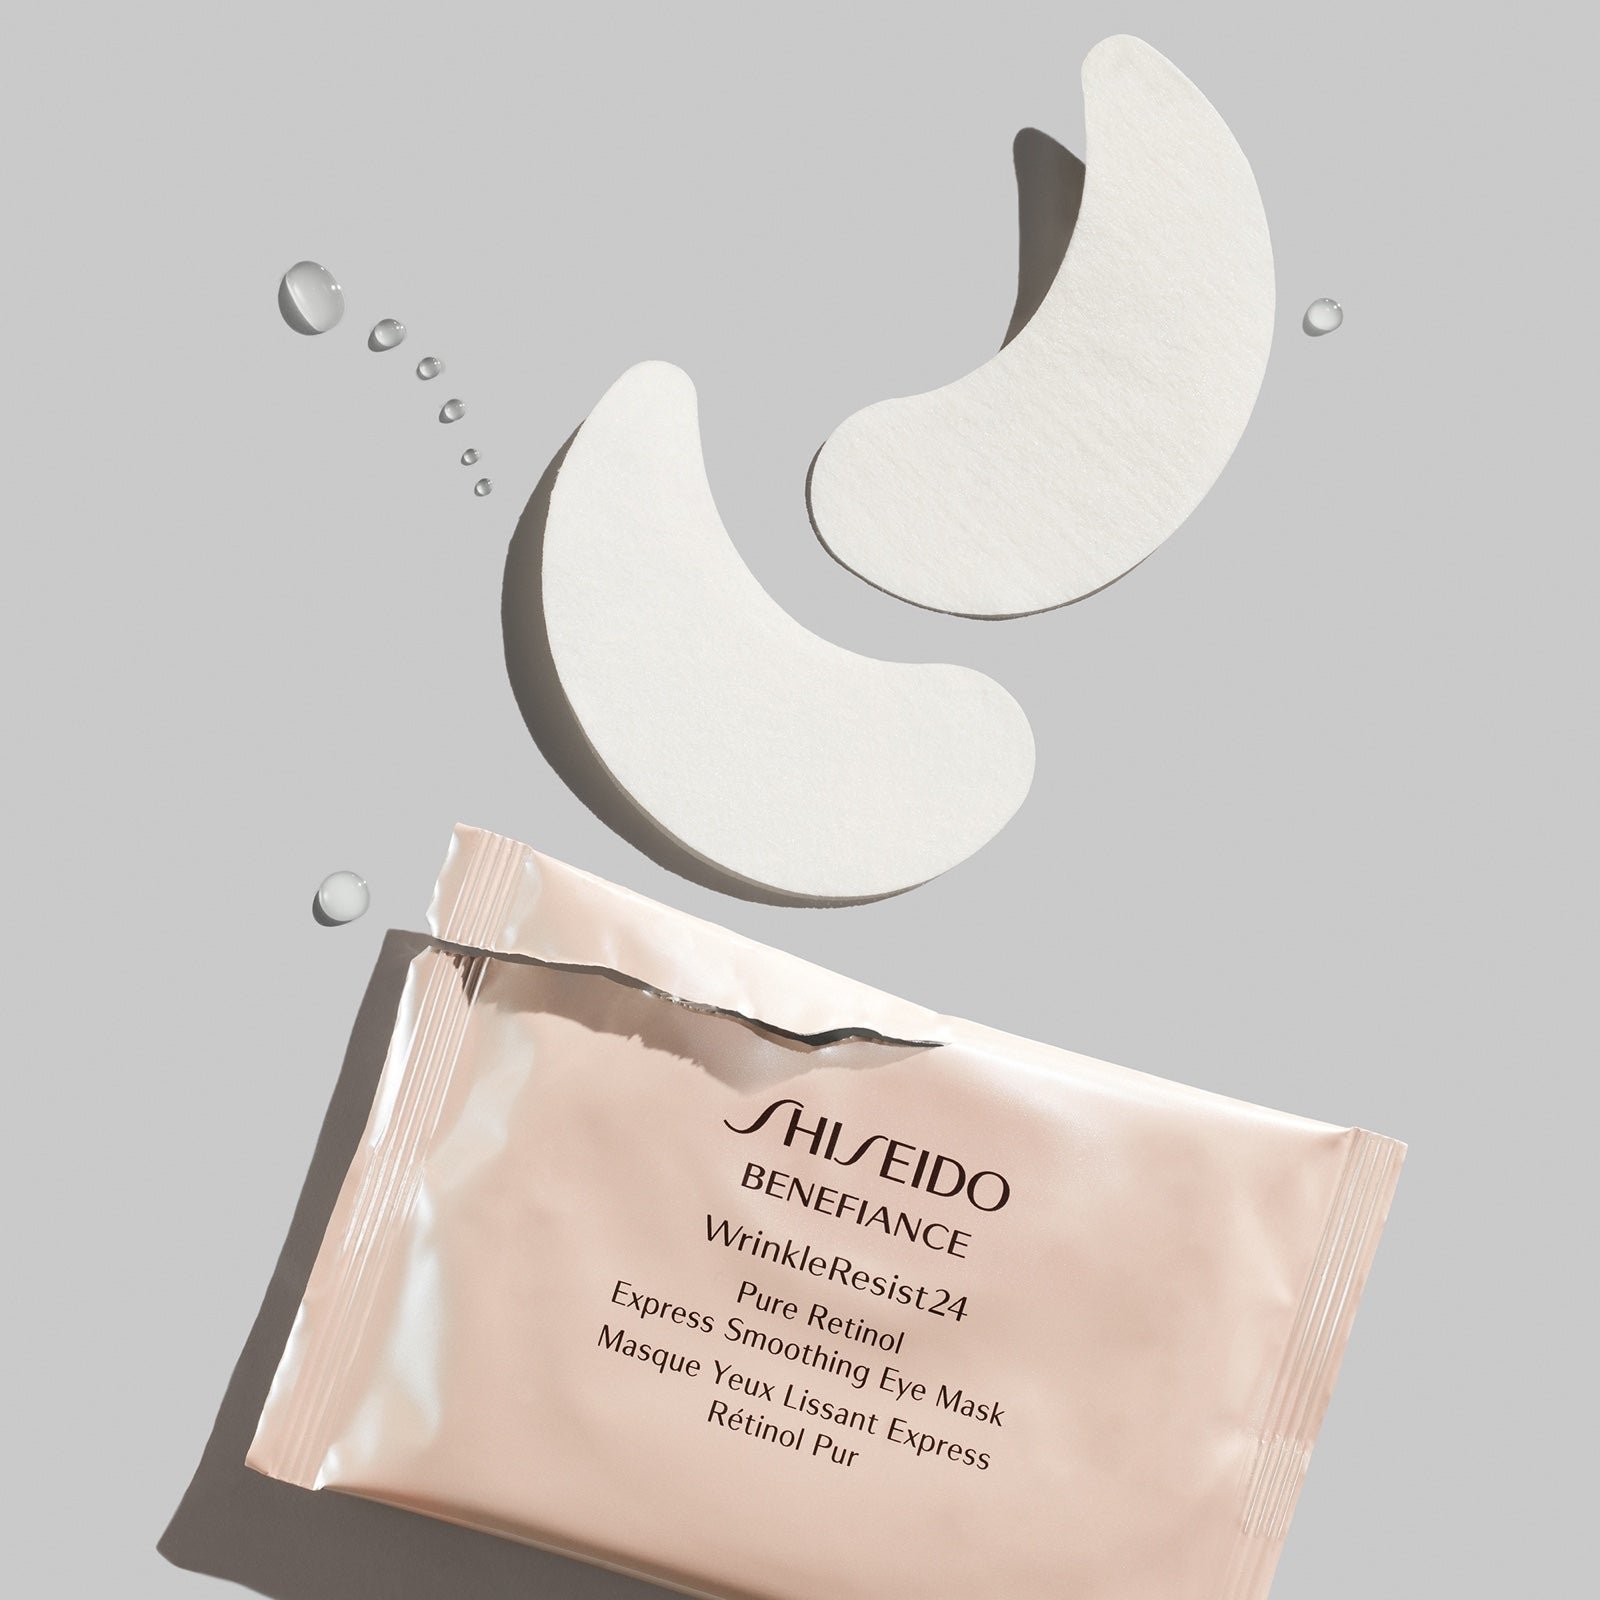 Shiseido Benefiance WrinkleResist24 Eye Masks - 4 total jDtZnEJuc